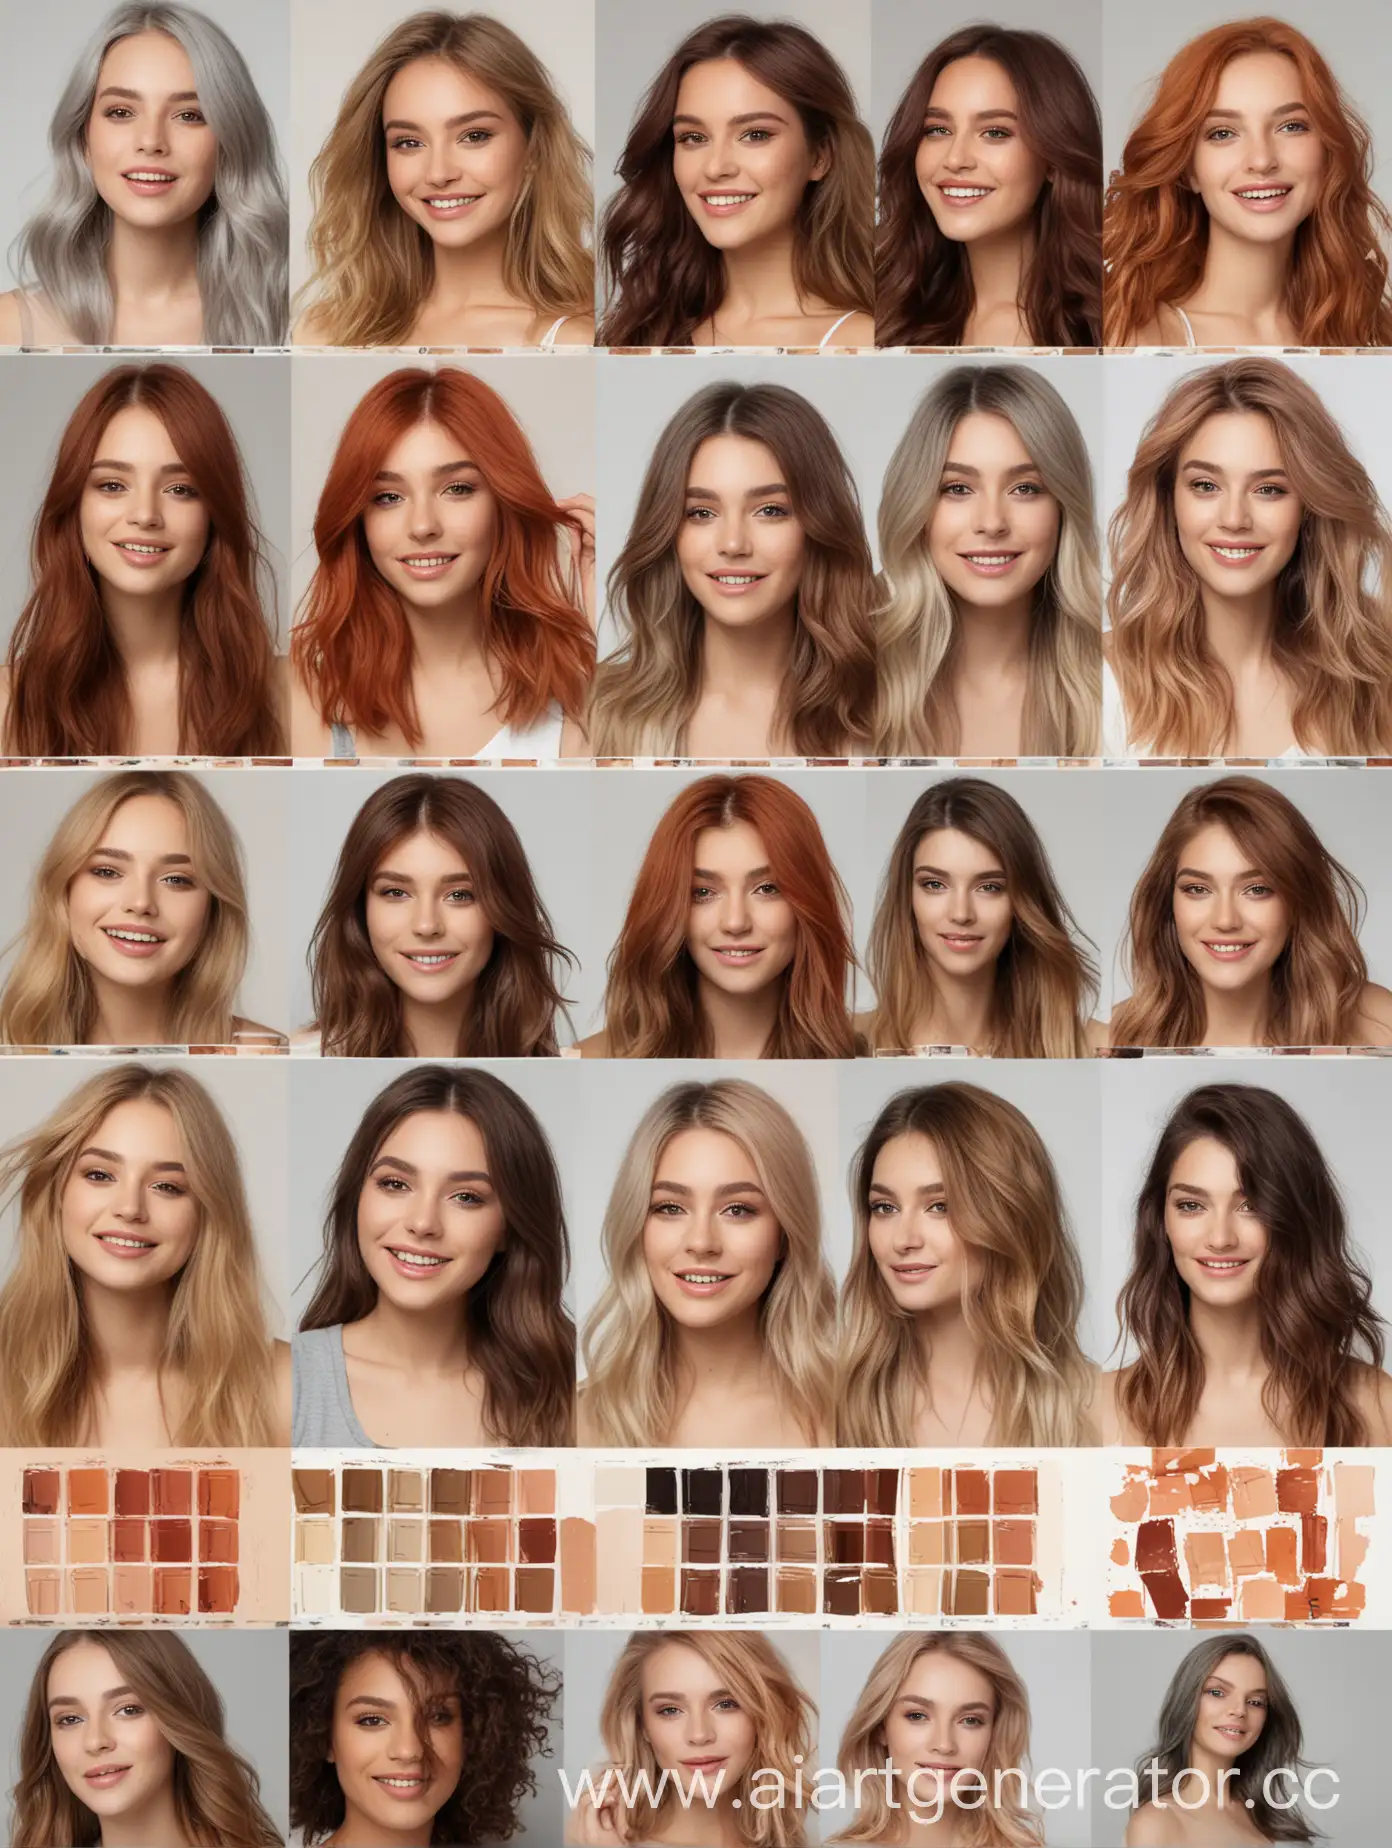 мудборд для бренда компании профессиональной косметики для волос, показывающий разнообразие цветов и палитры красок для волос, здоровье, индивидуальность каждой девушки, использующей краски, позитивное настроение